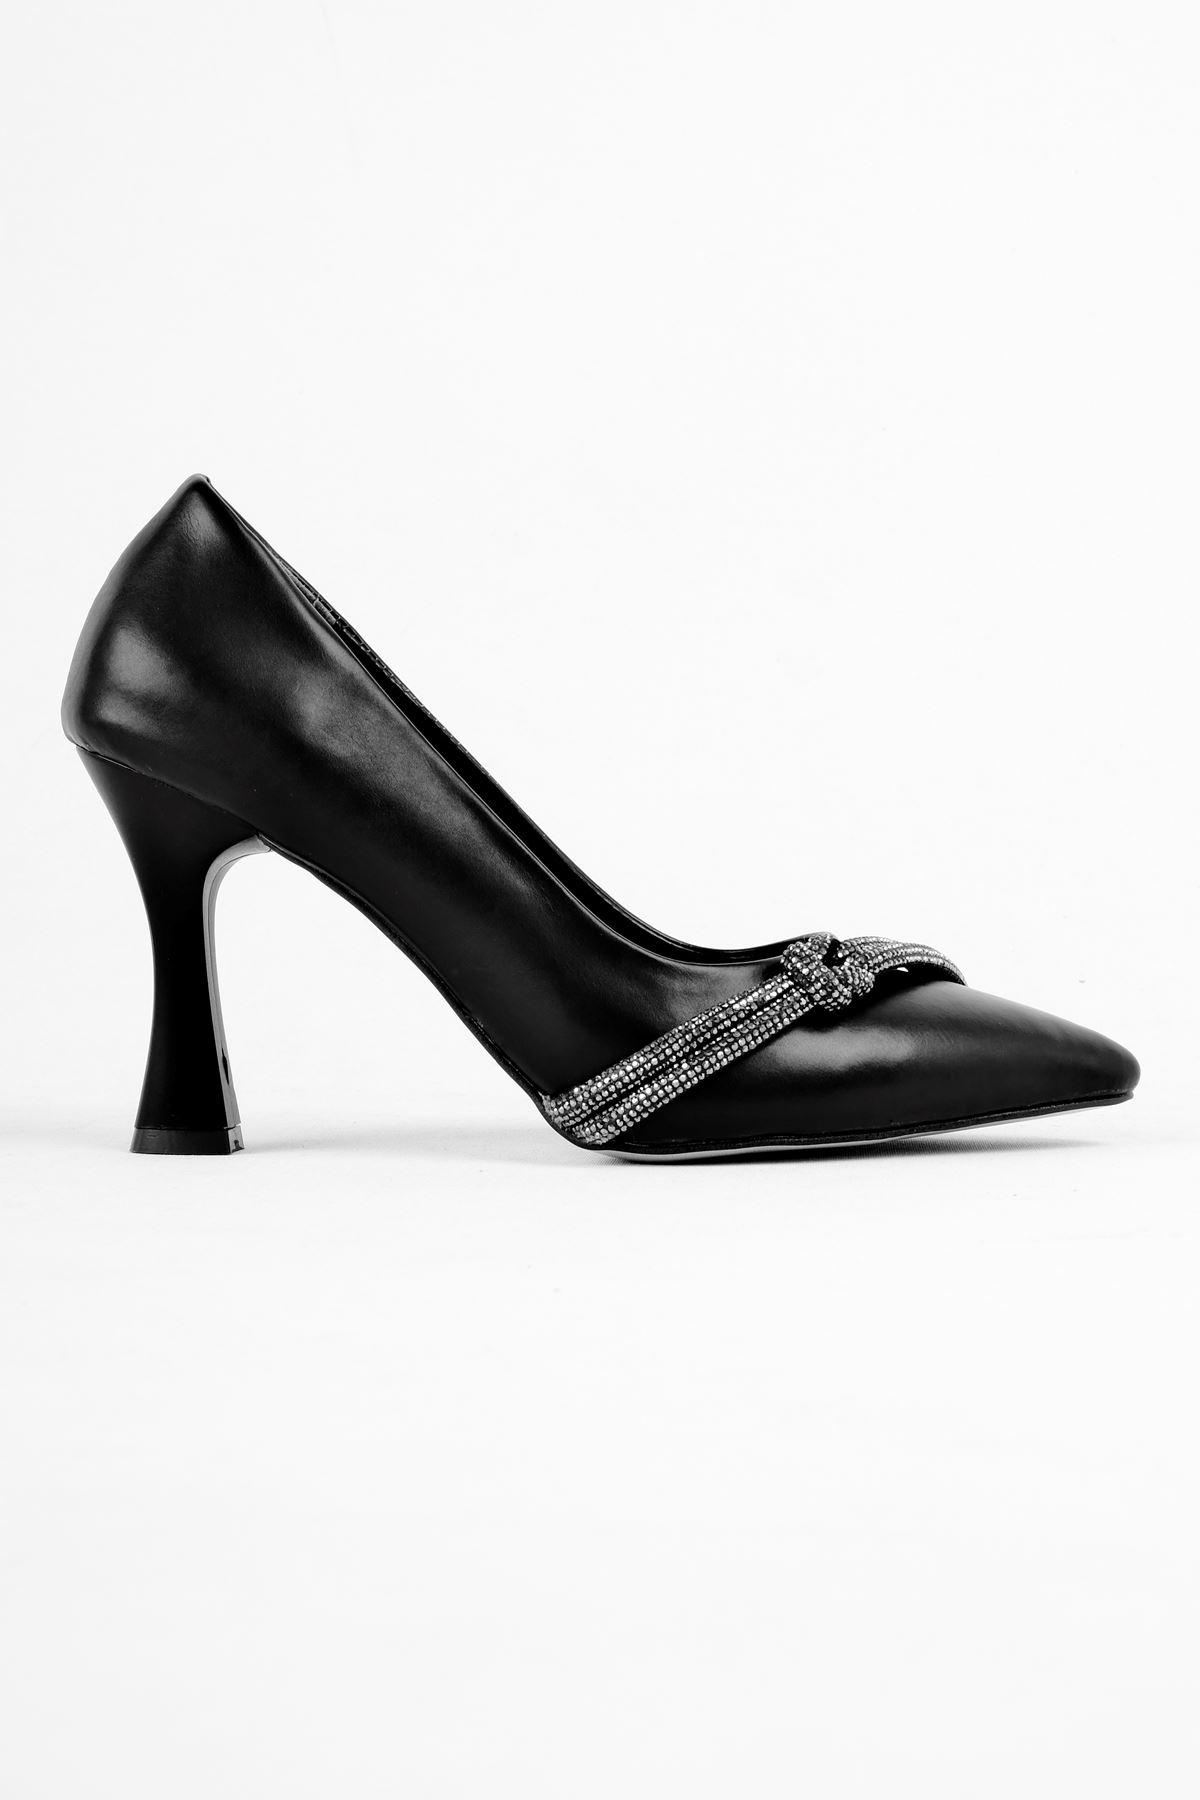 Lavender Kadın Topuklu Ayakkabı Düğüm Taşlı-siyah